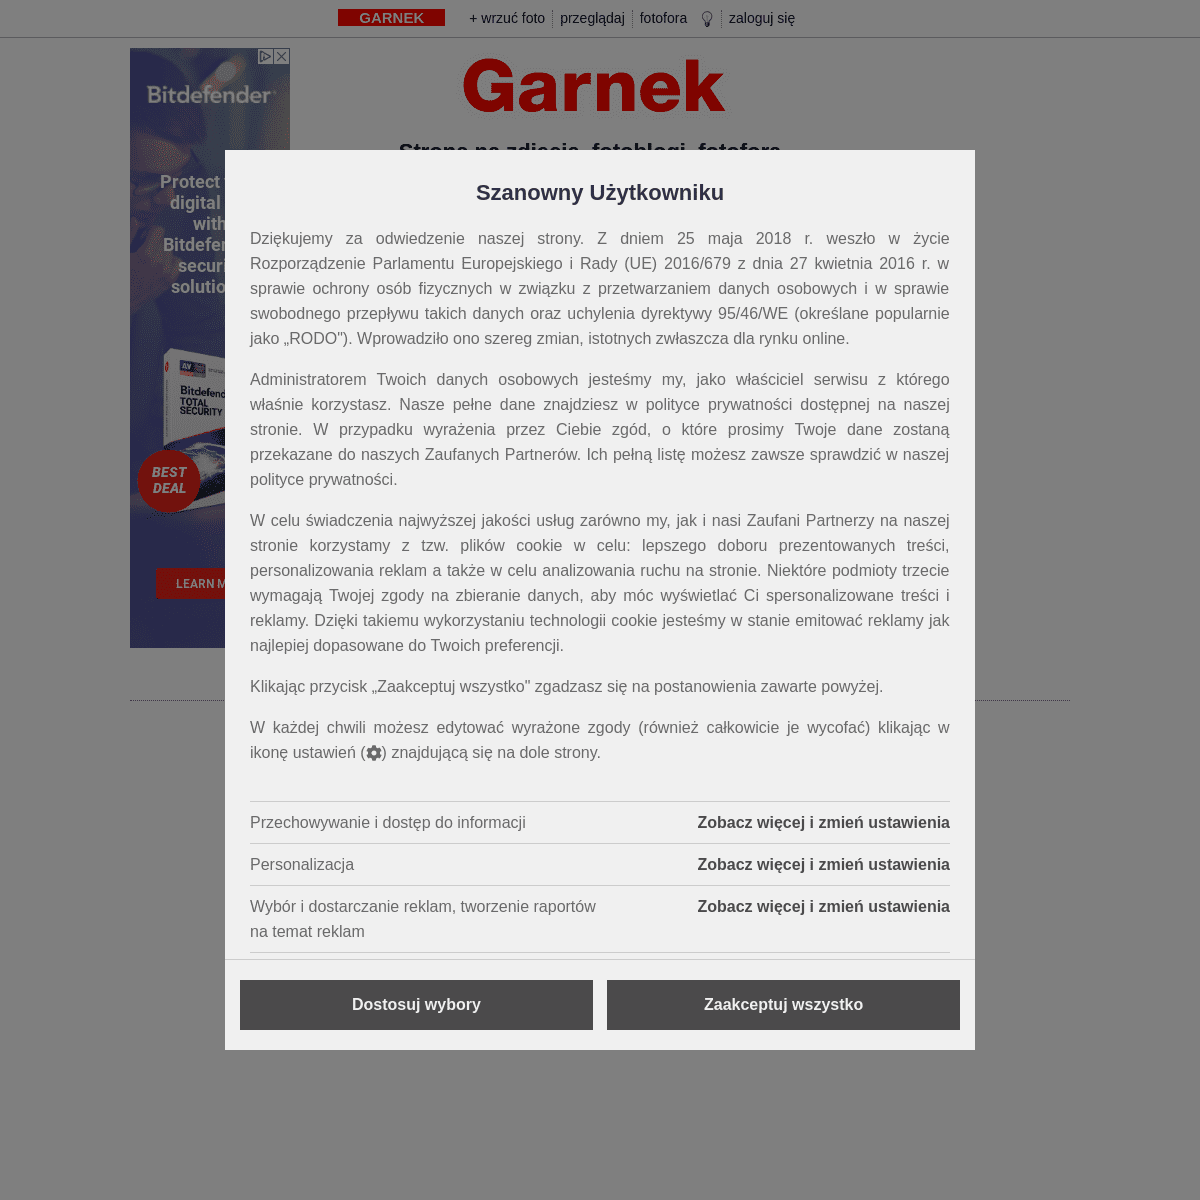 A complete backup of garnek.pl